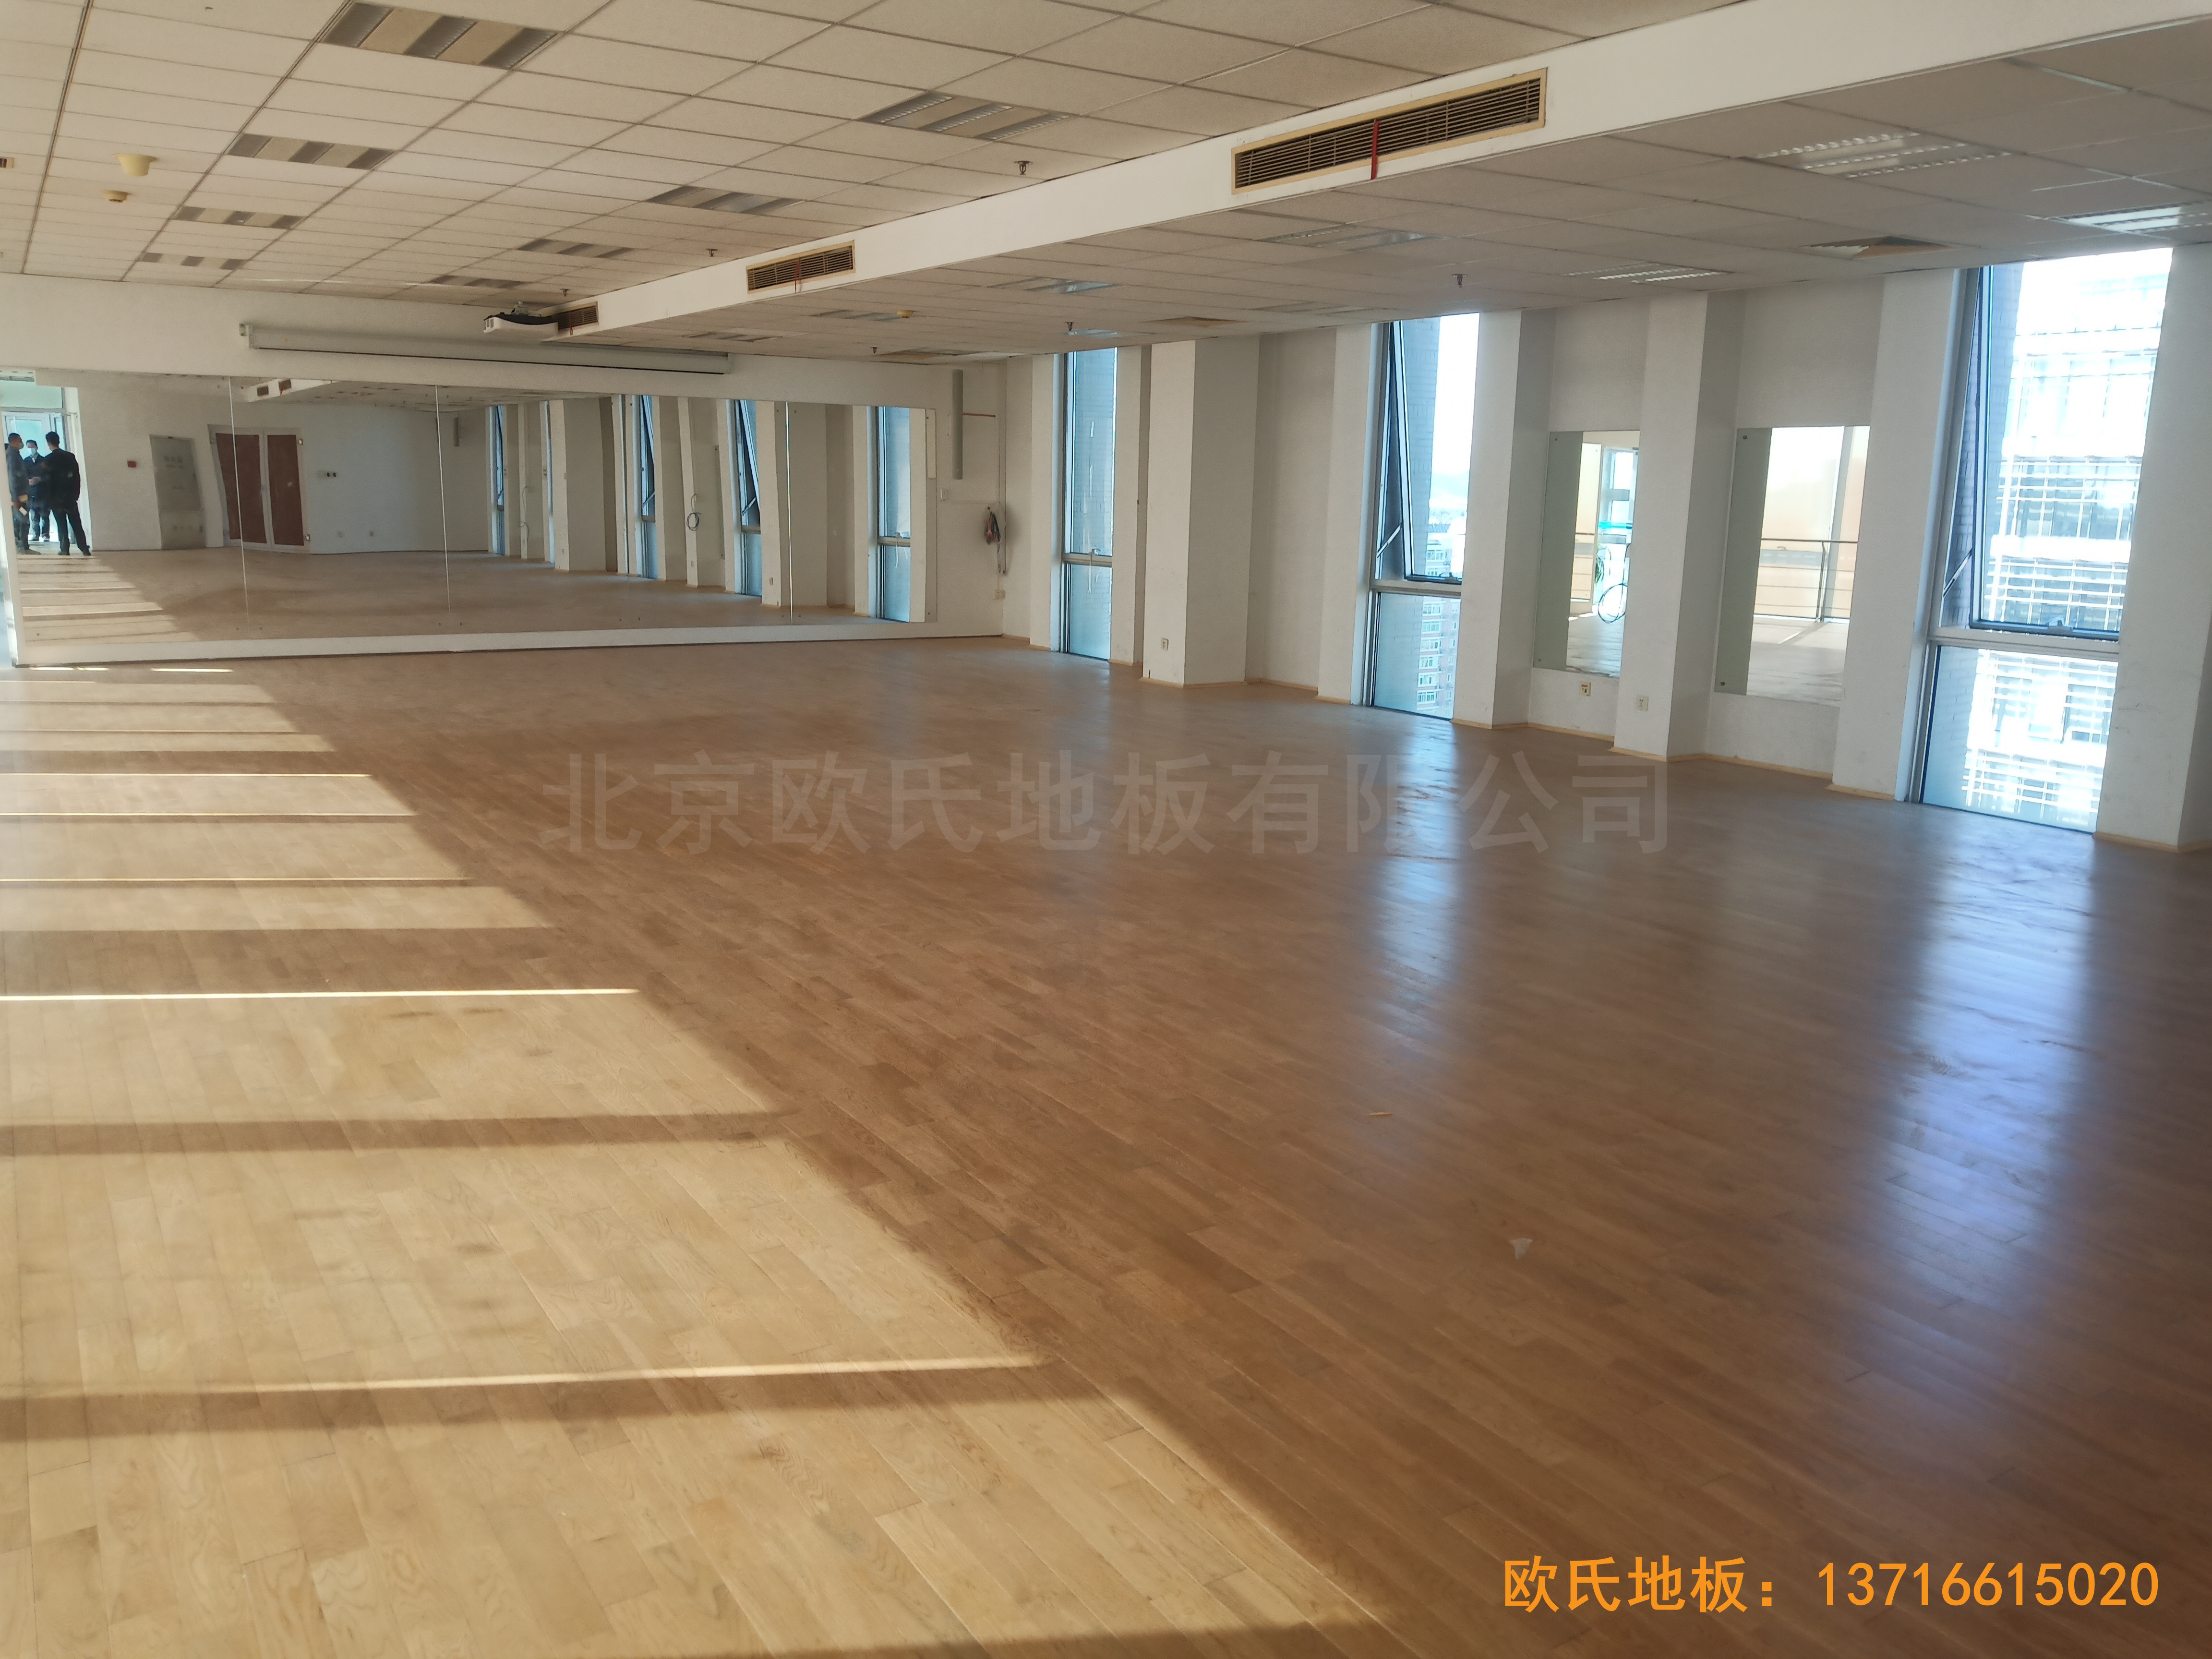 中国科学院技术研究所运动馆体育木地板铺装案例0